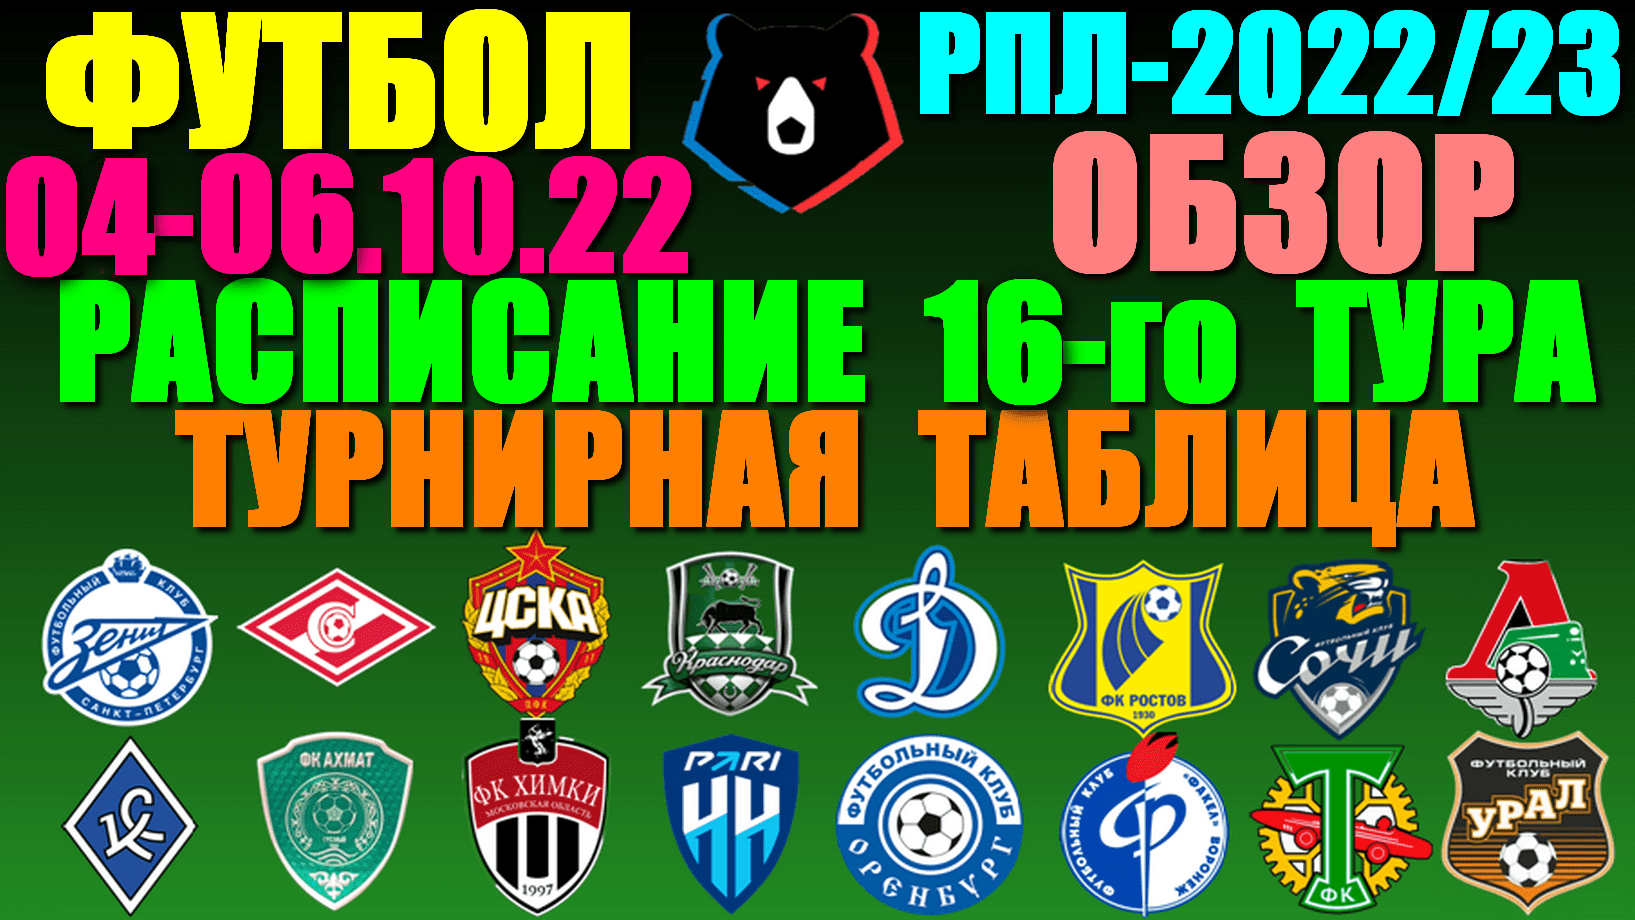 Футбол: Российская Премьер лига-2022/2023. Расписание 16-го тура 04 - 06.11.22. Турнирная таблица